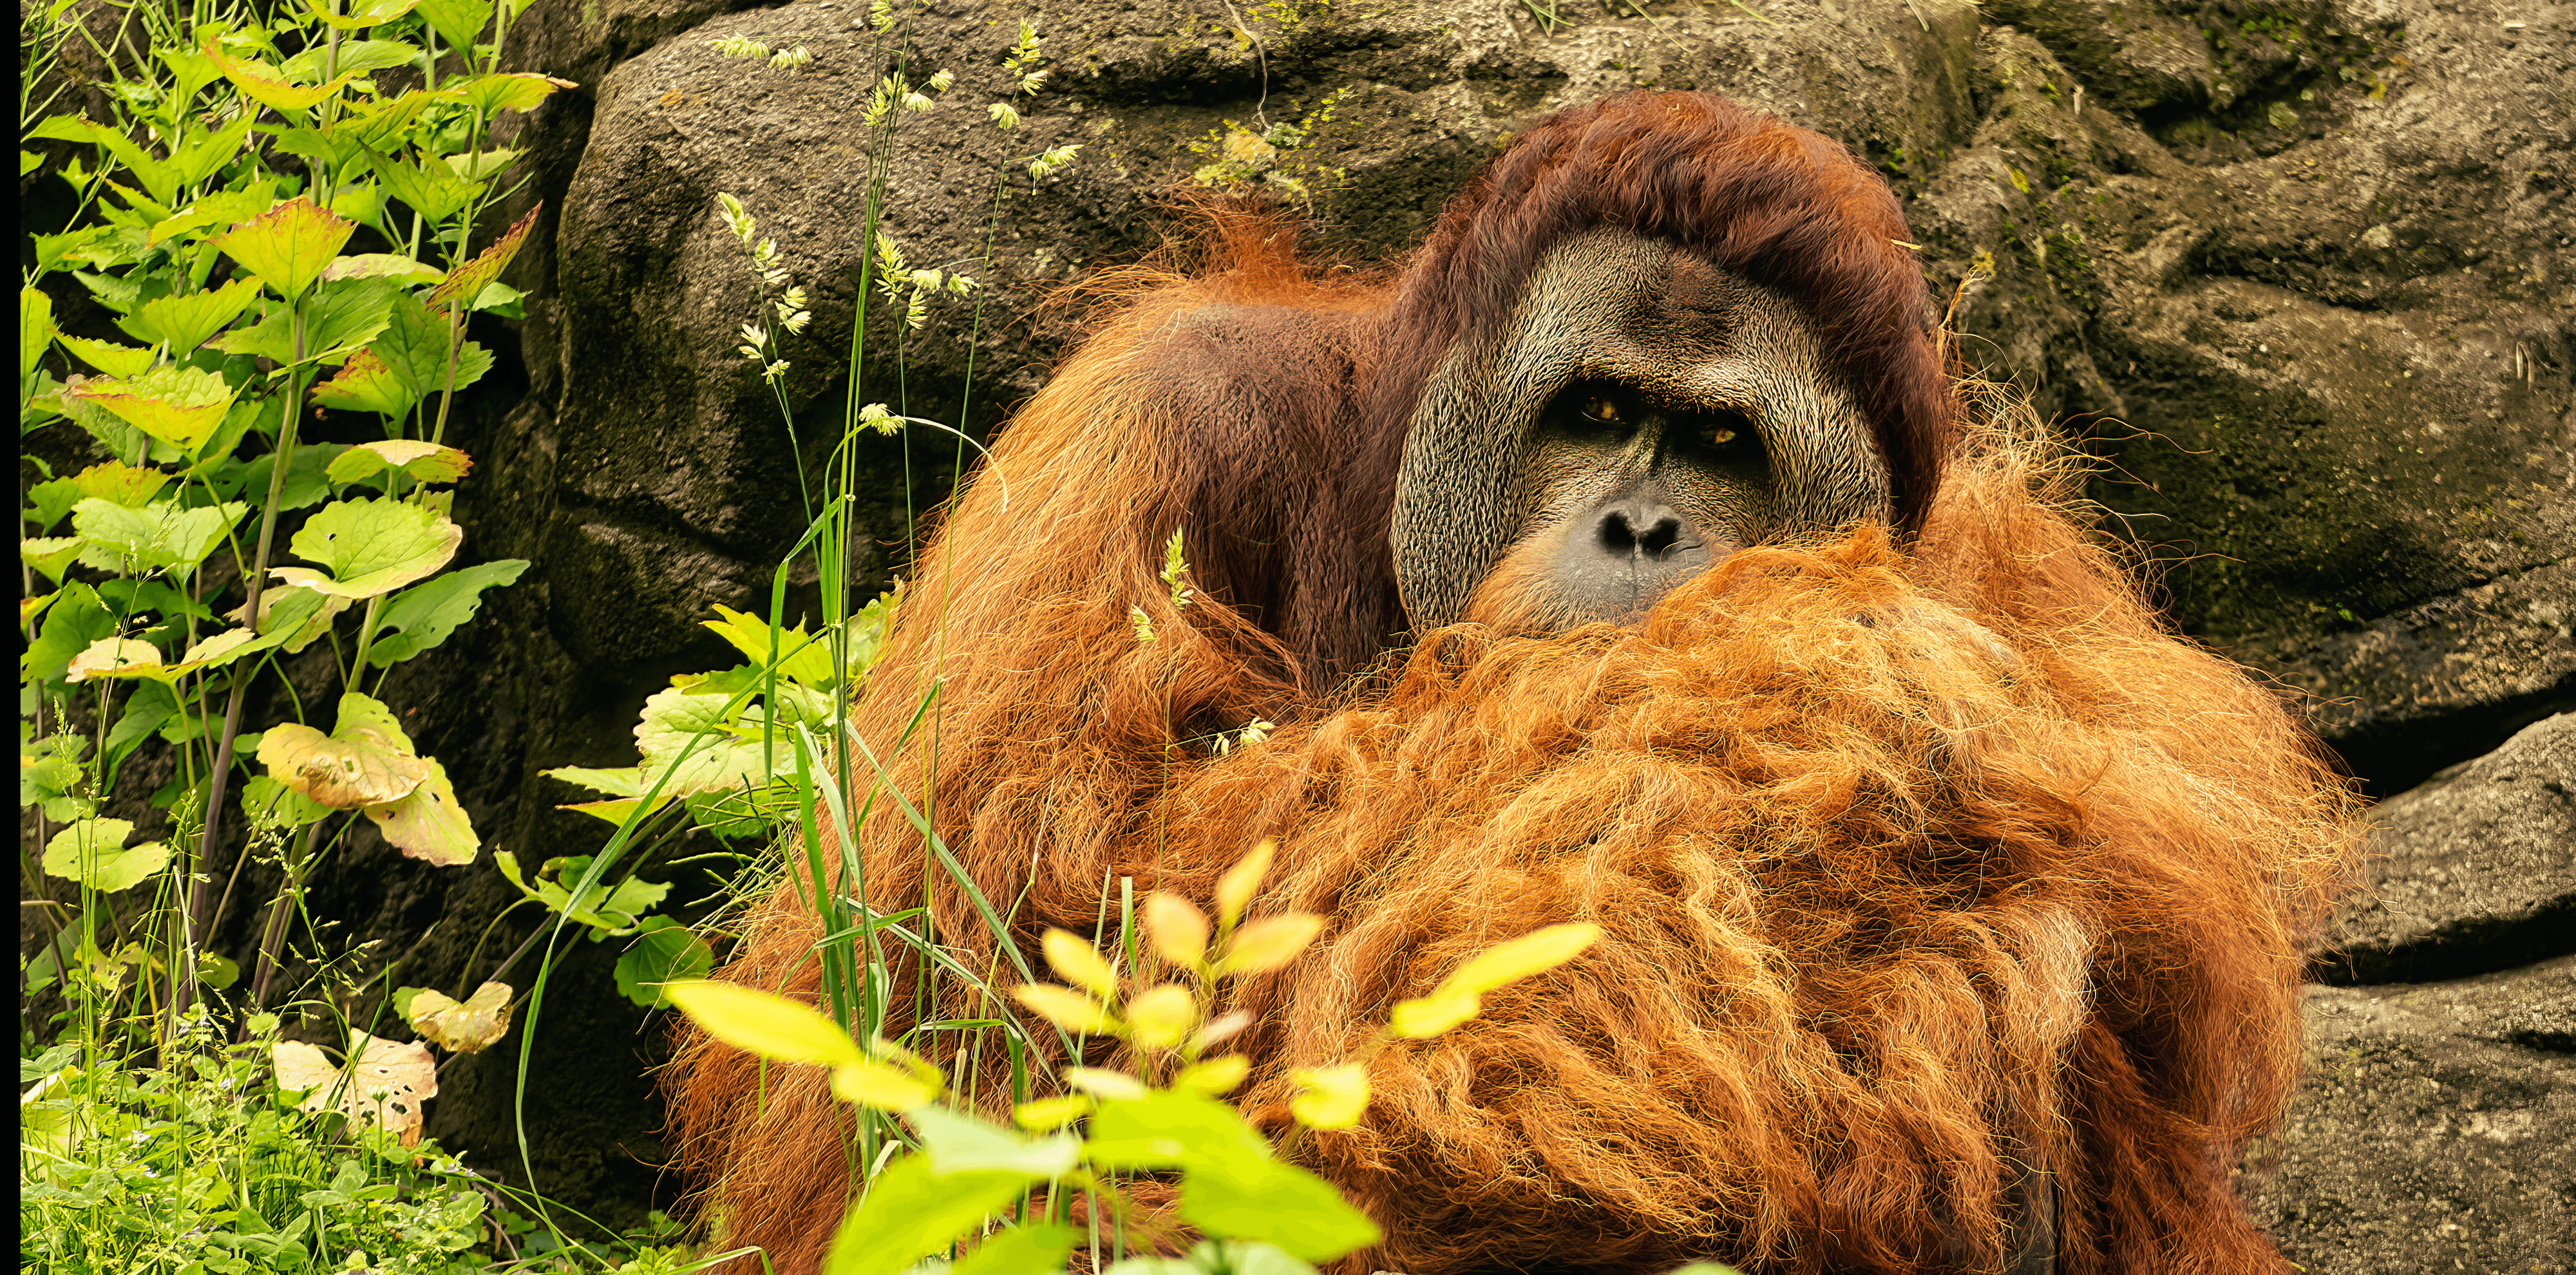 Sumantran Orangutan